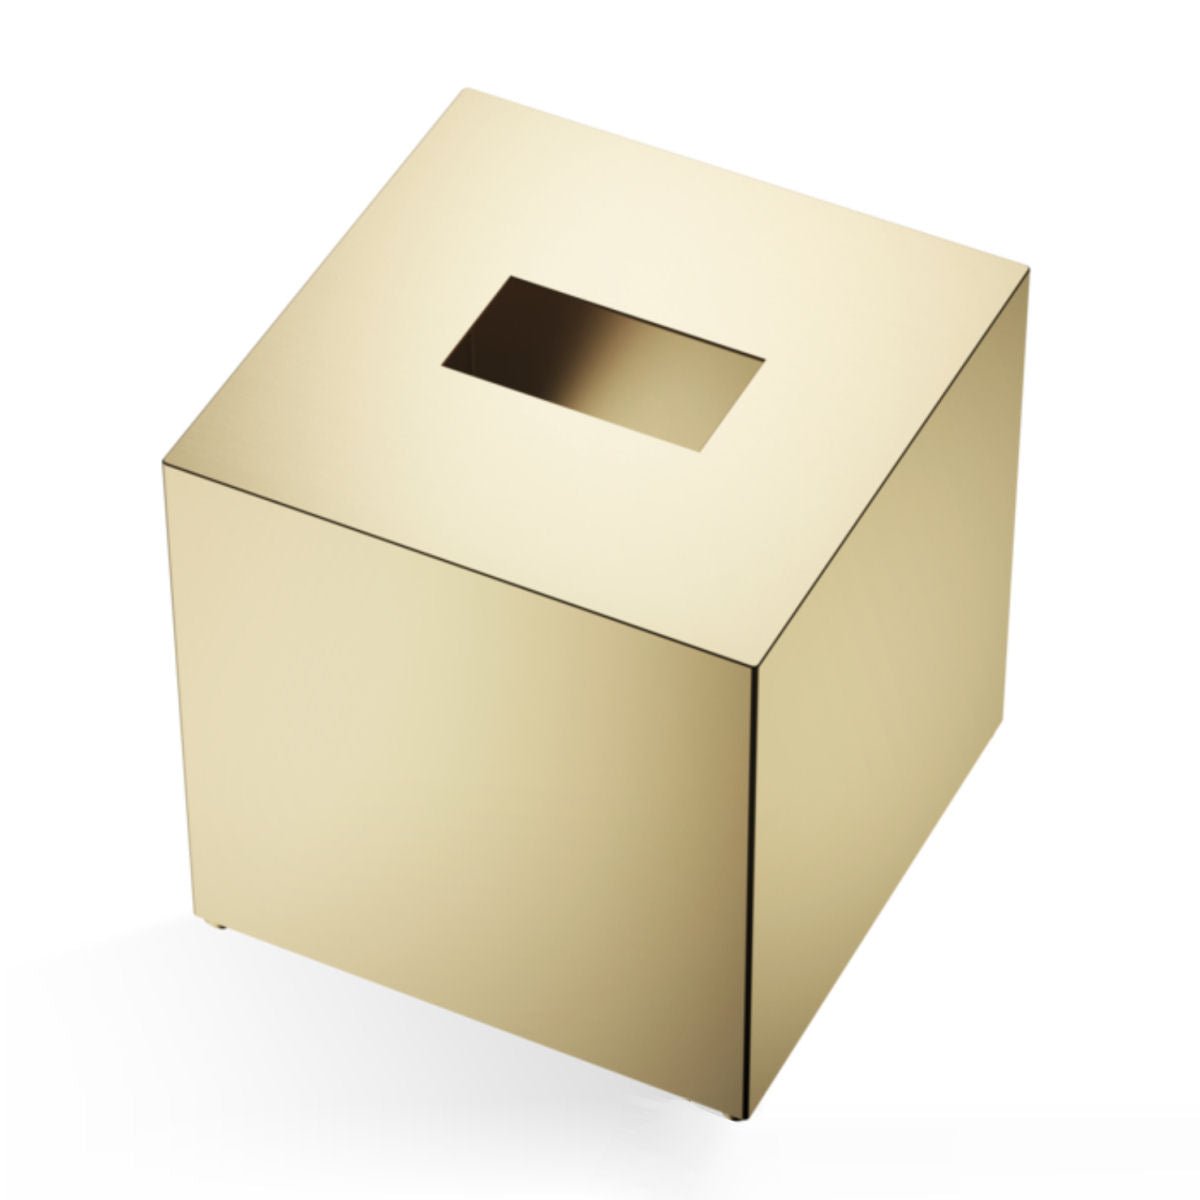 Matt Gold Square Tissue Box by Decor Walther - |VESIMI Design|